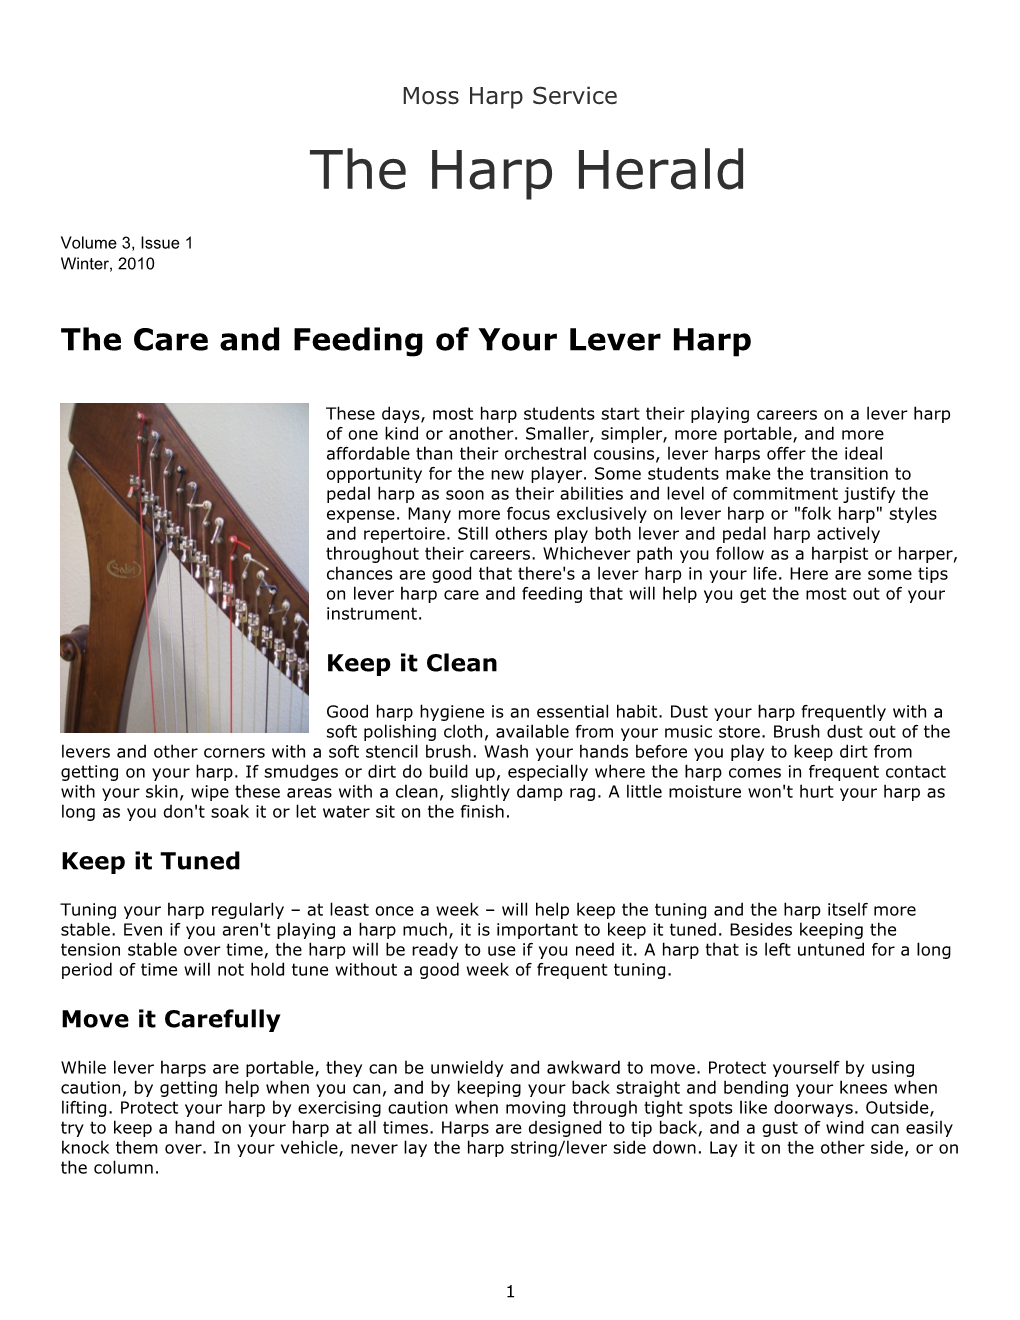 The Harp Herald